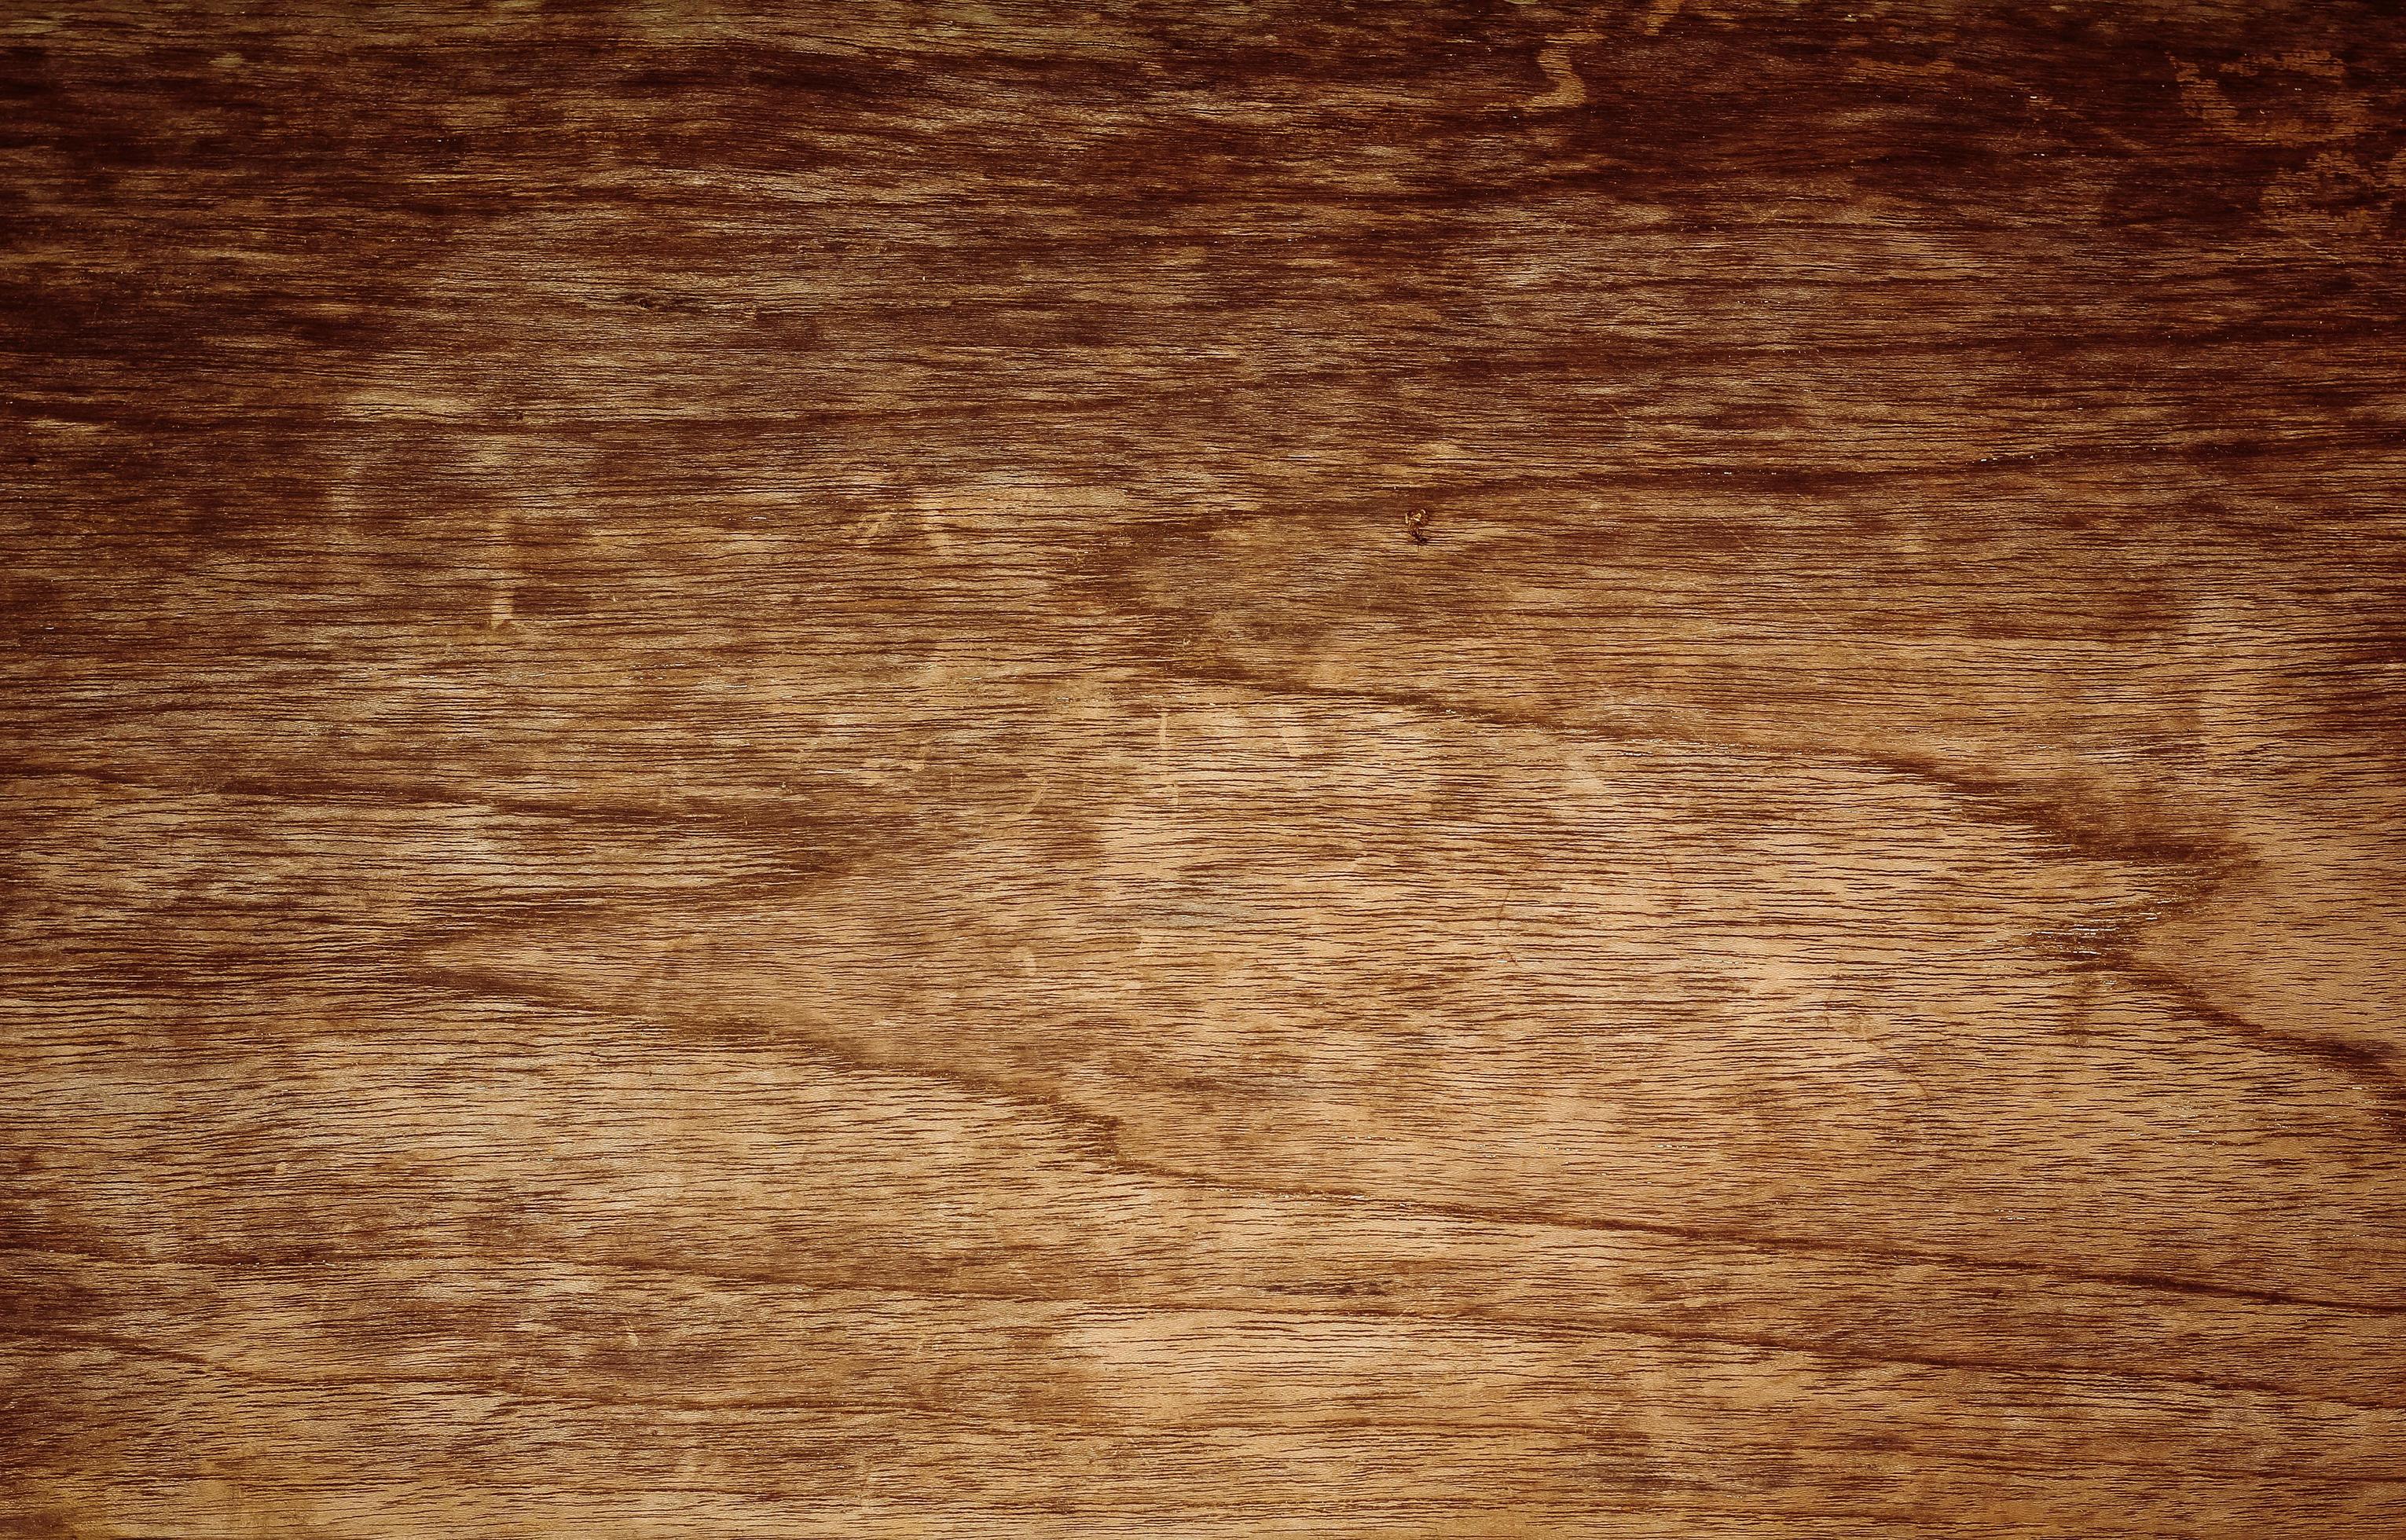 Bề mặt gỗ cũ với những vết nứt, vết xước là điểm nhấn thu hút mọi ánh nhìn. Từ những chiếc bàn, tủ quần áo đến những sản phẩm trang trí tinh tế, bề mặt gỗ cũ tạo nên sự đặc biệt và đẳng cấp cho không gian sống. Hãy khám phá ngay để trang trí ngôi nhà của mình thật tinh tế và ấn tượng. Translation: The surface of old wood with cracks and scratches is the highlight that attracts every look. From tables, wardrobes to exquisite decorative products, the old wood surface creates uniqueness and class for living space. Let\'s explore now to decorate our home exquisitely and impressively.